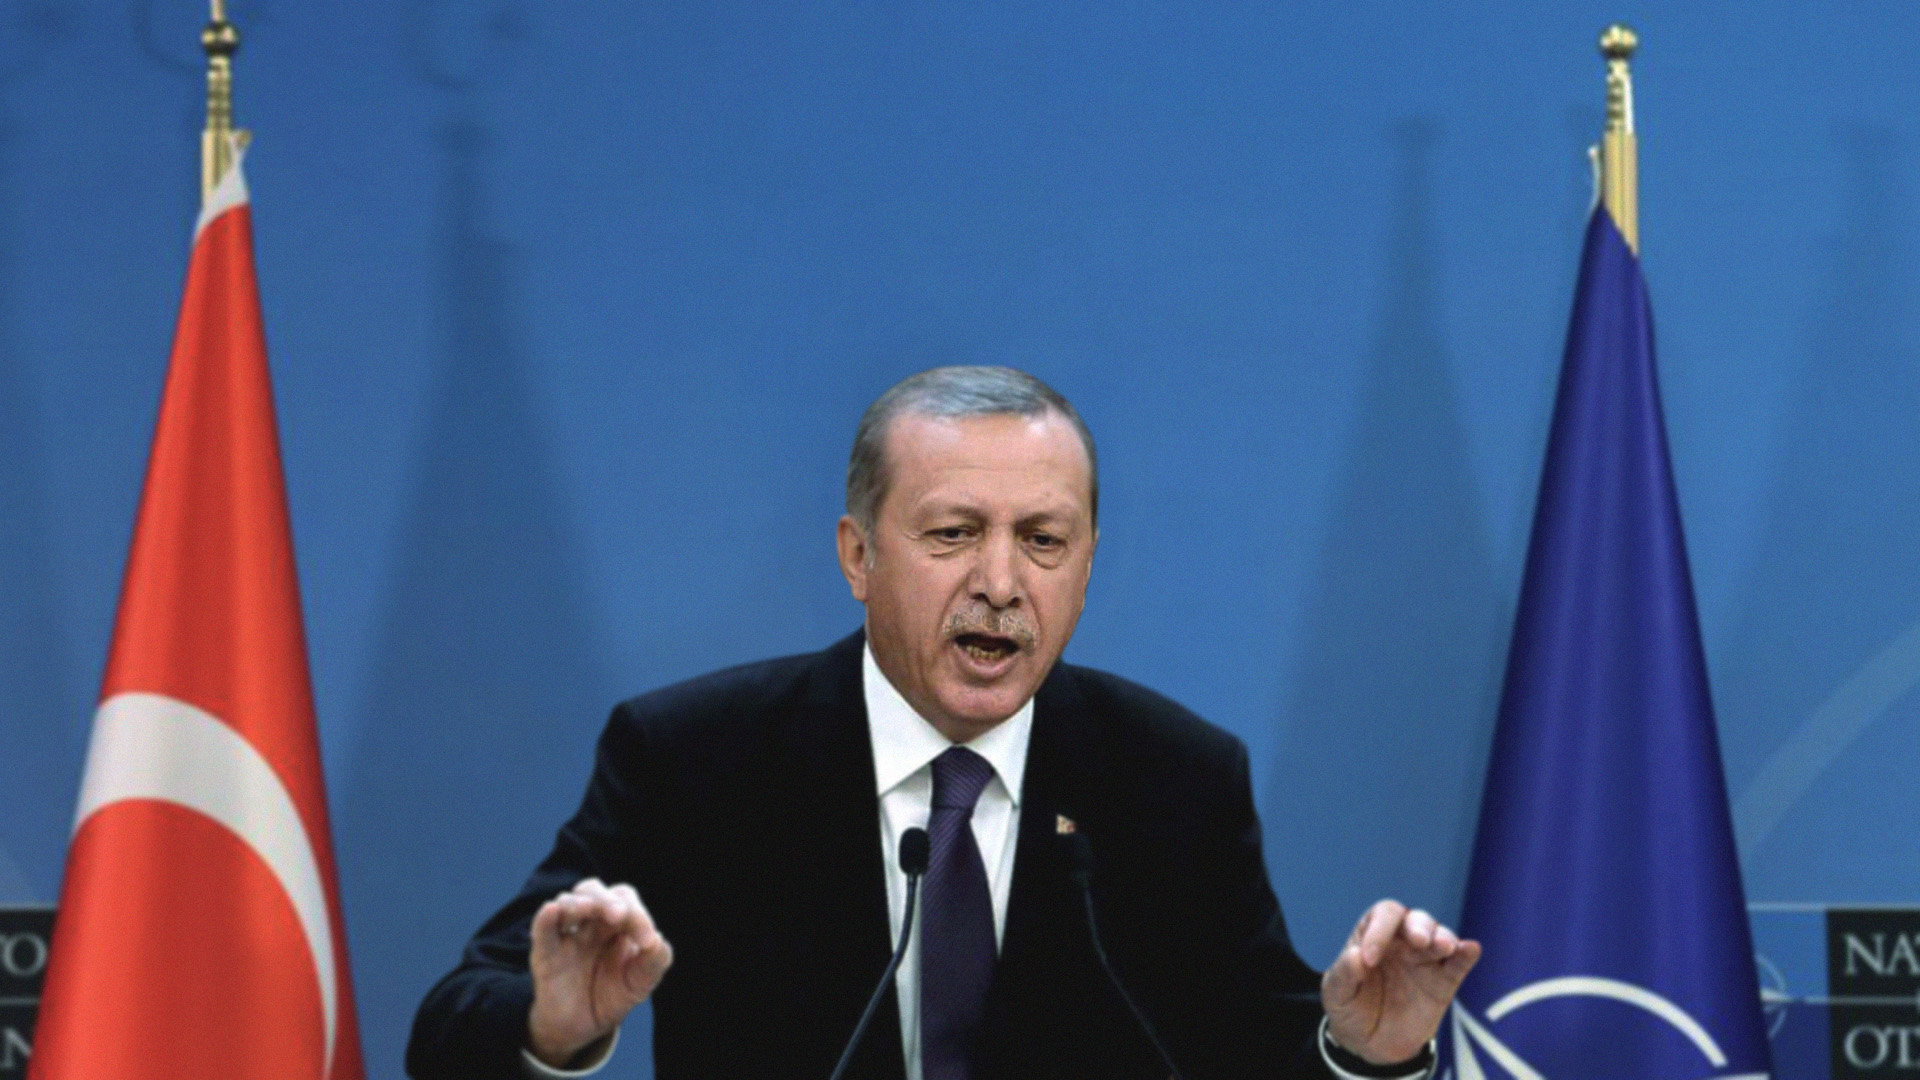 صورة إردوغان يشترط انقراض الكُرد قبل الموافقة على انضمام أي دولة للناتو